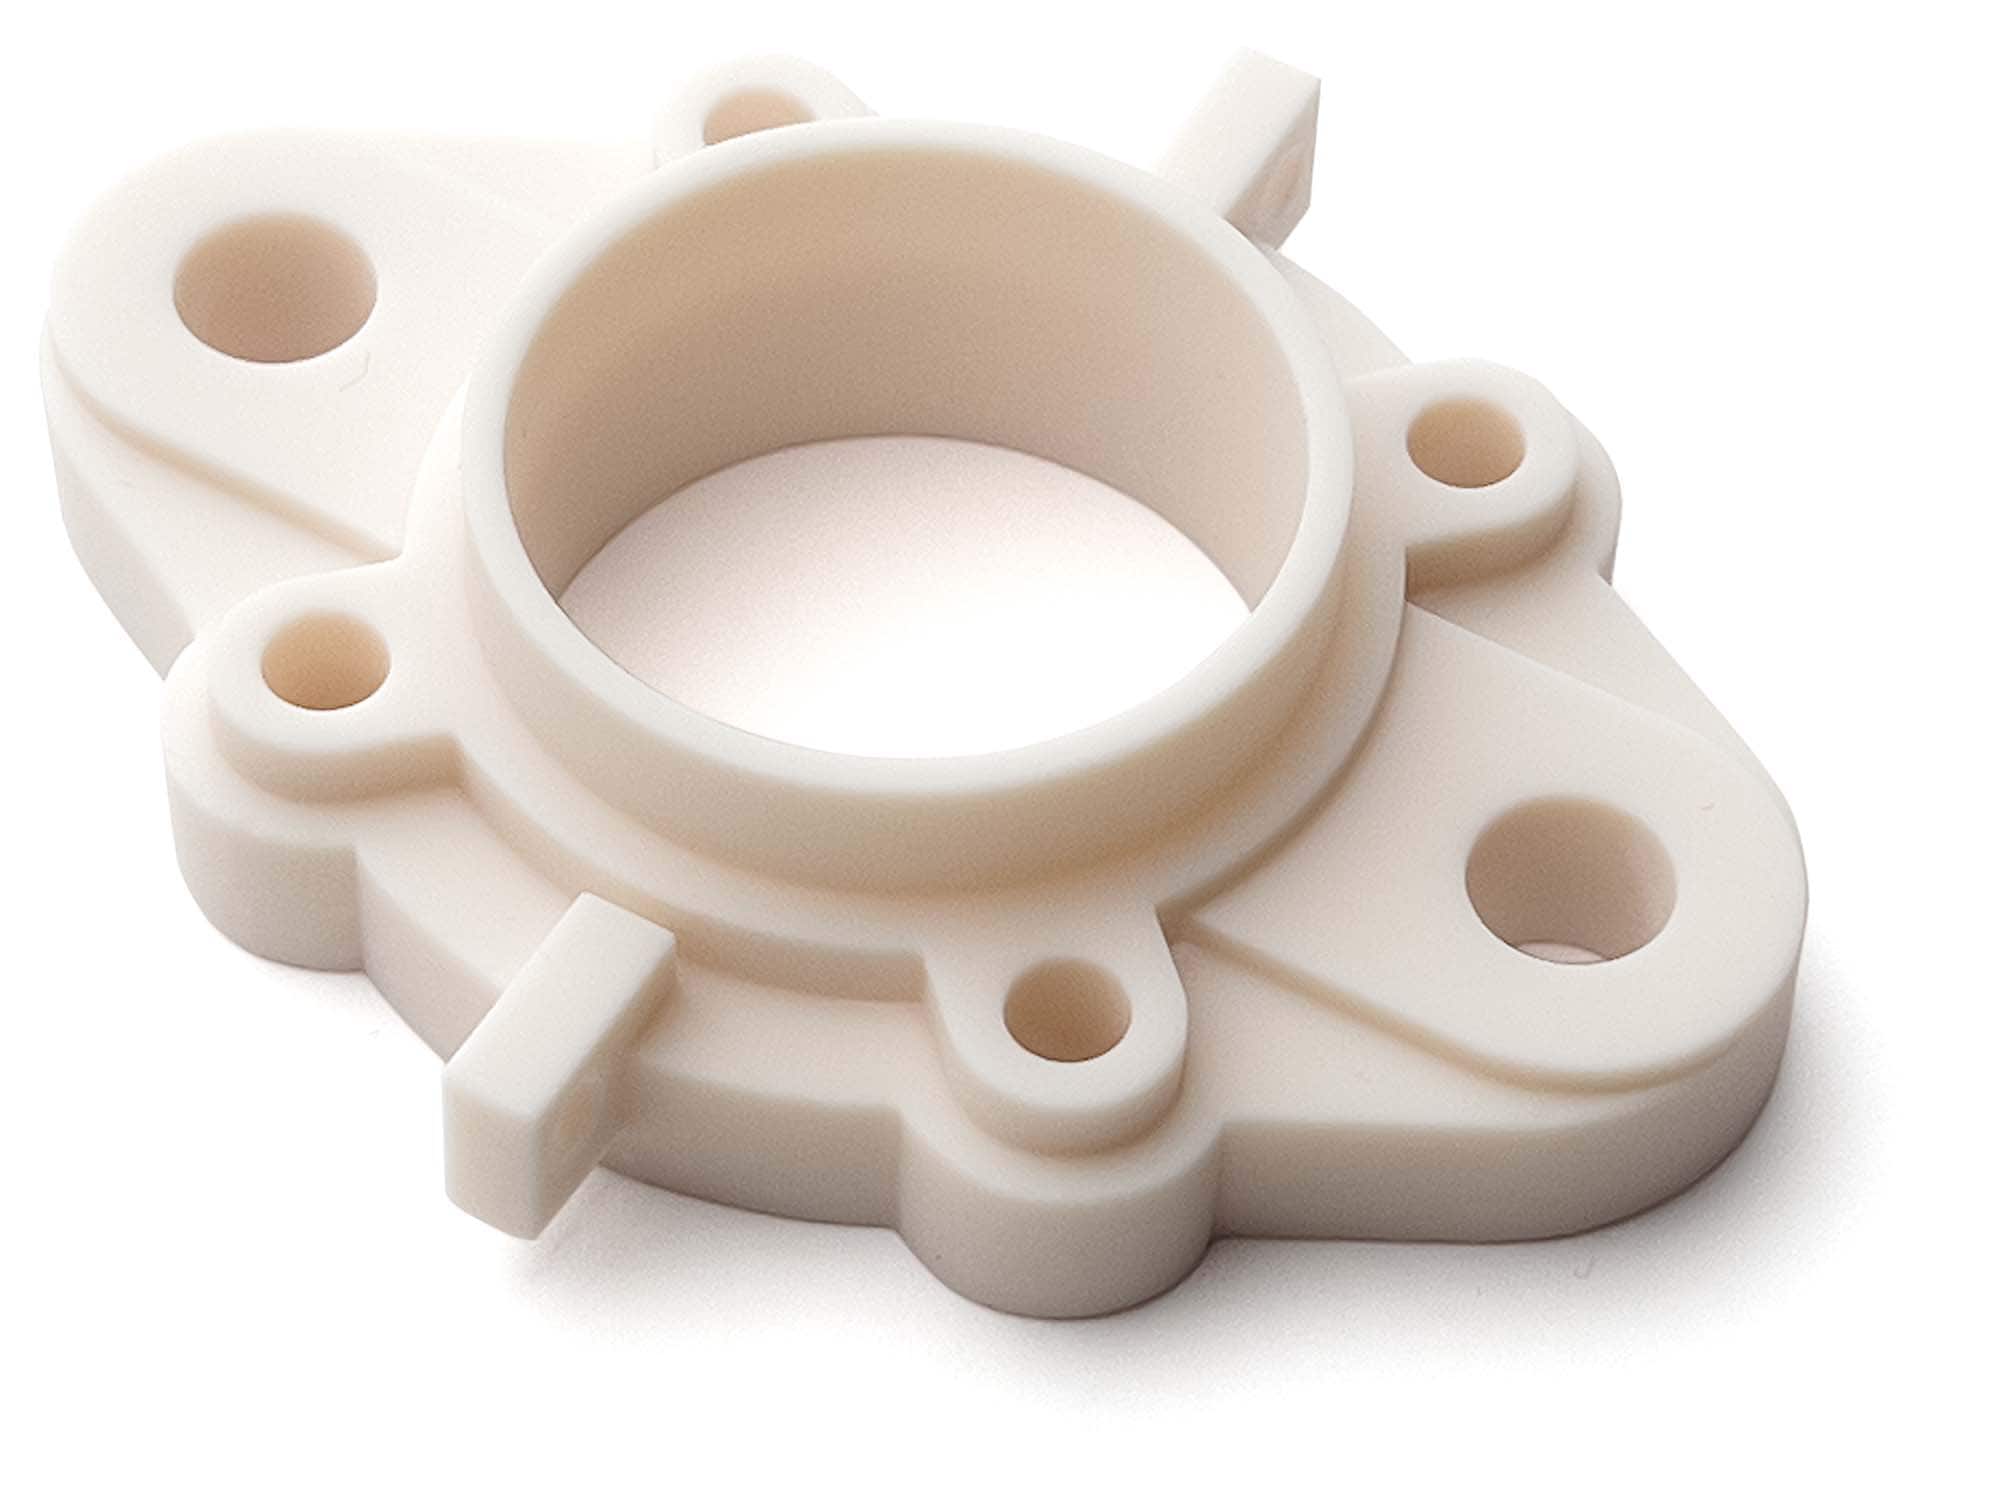 Ceramic resin 3D printing